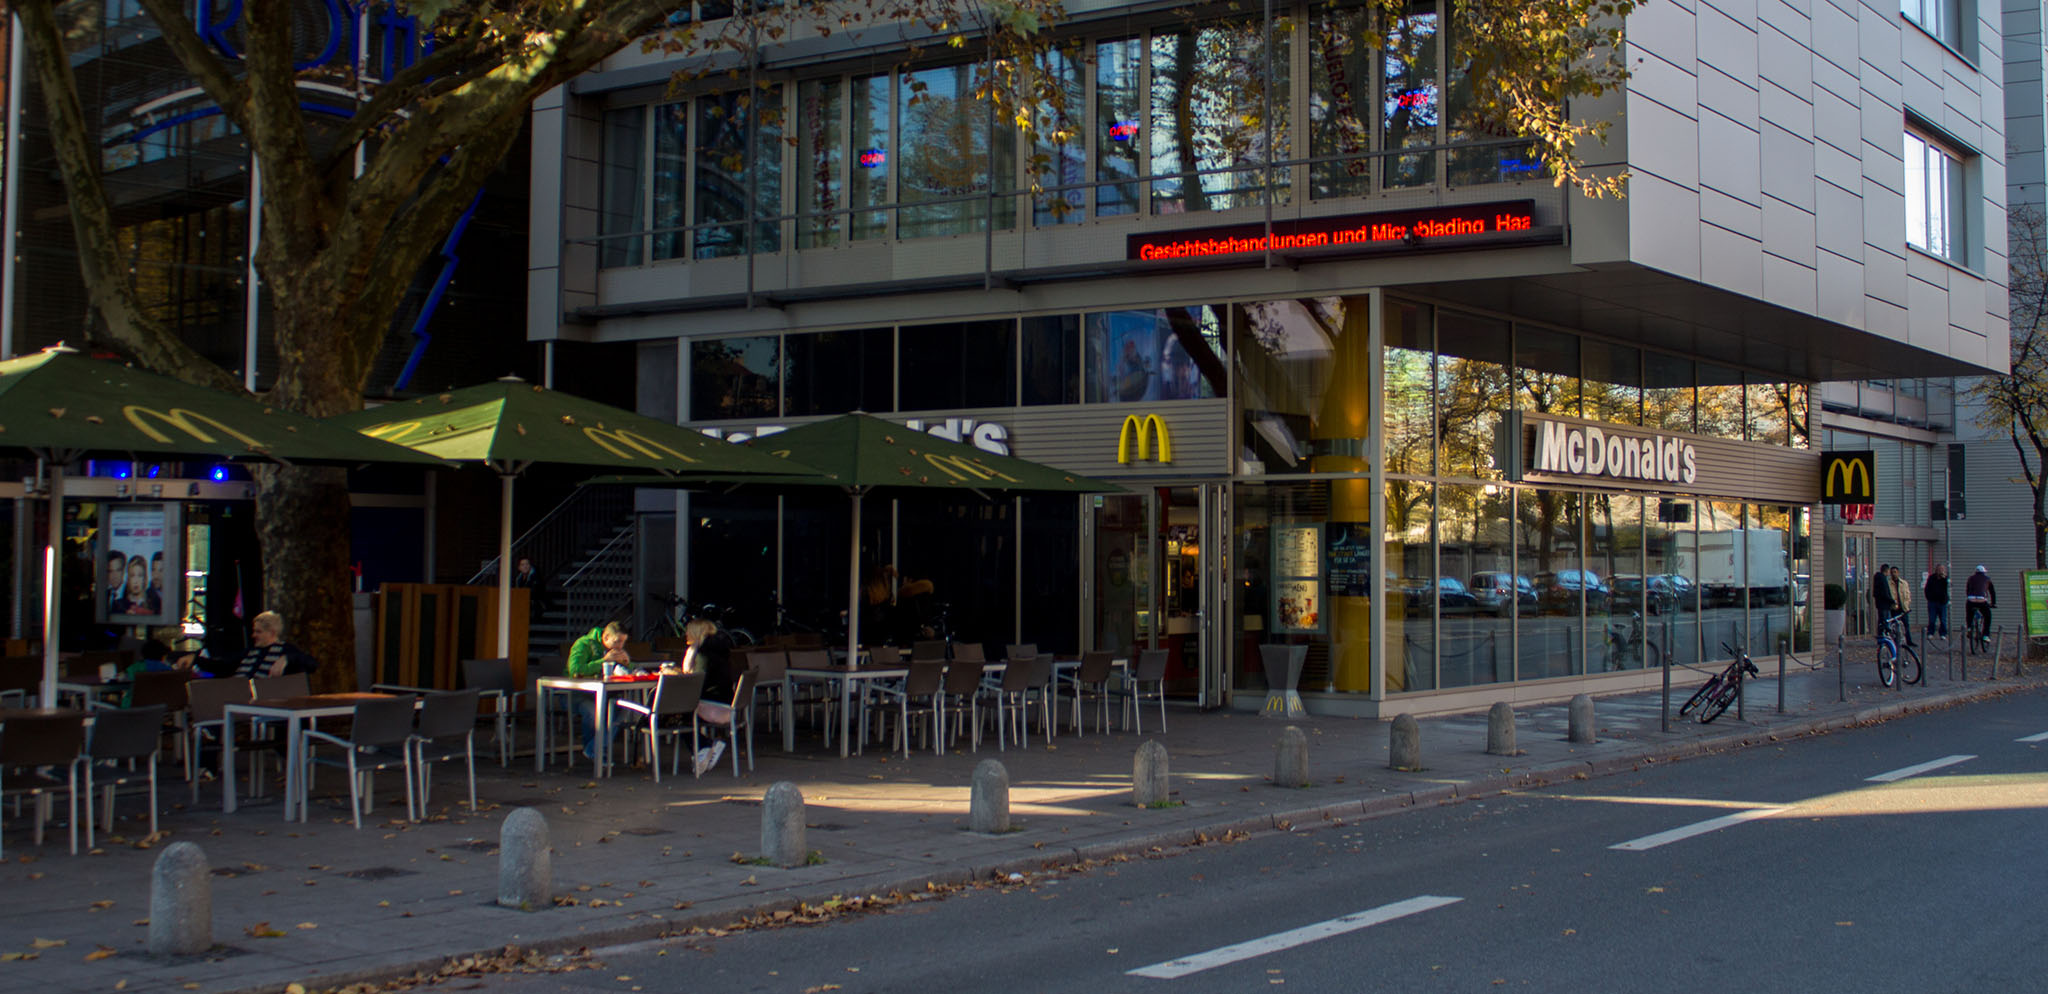 Das McDonald’s-Restaurant in München (Goethestraße)